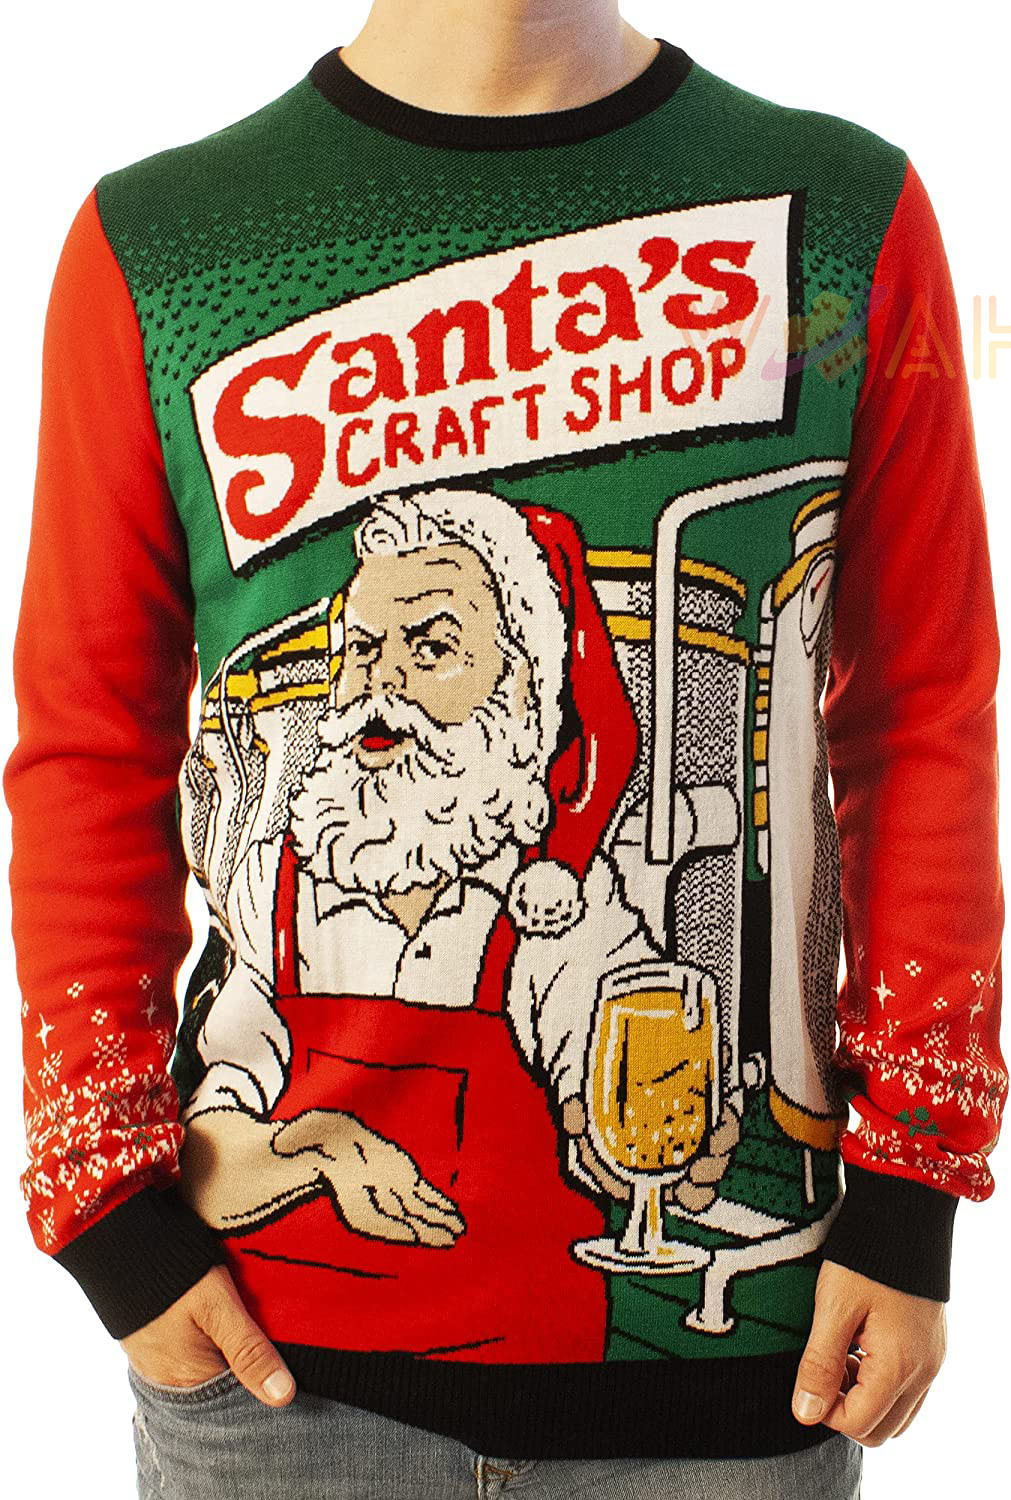 Carry Zich verzetten tegen Oven Funny Santa Craft Shop Black Ugly Christmas 3D Sweater - WoahTee